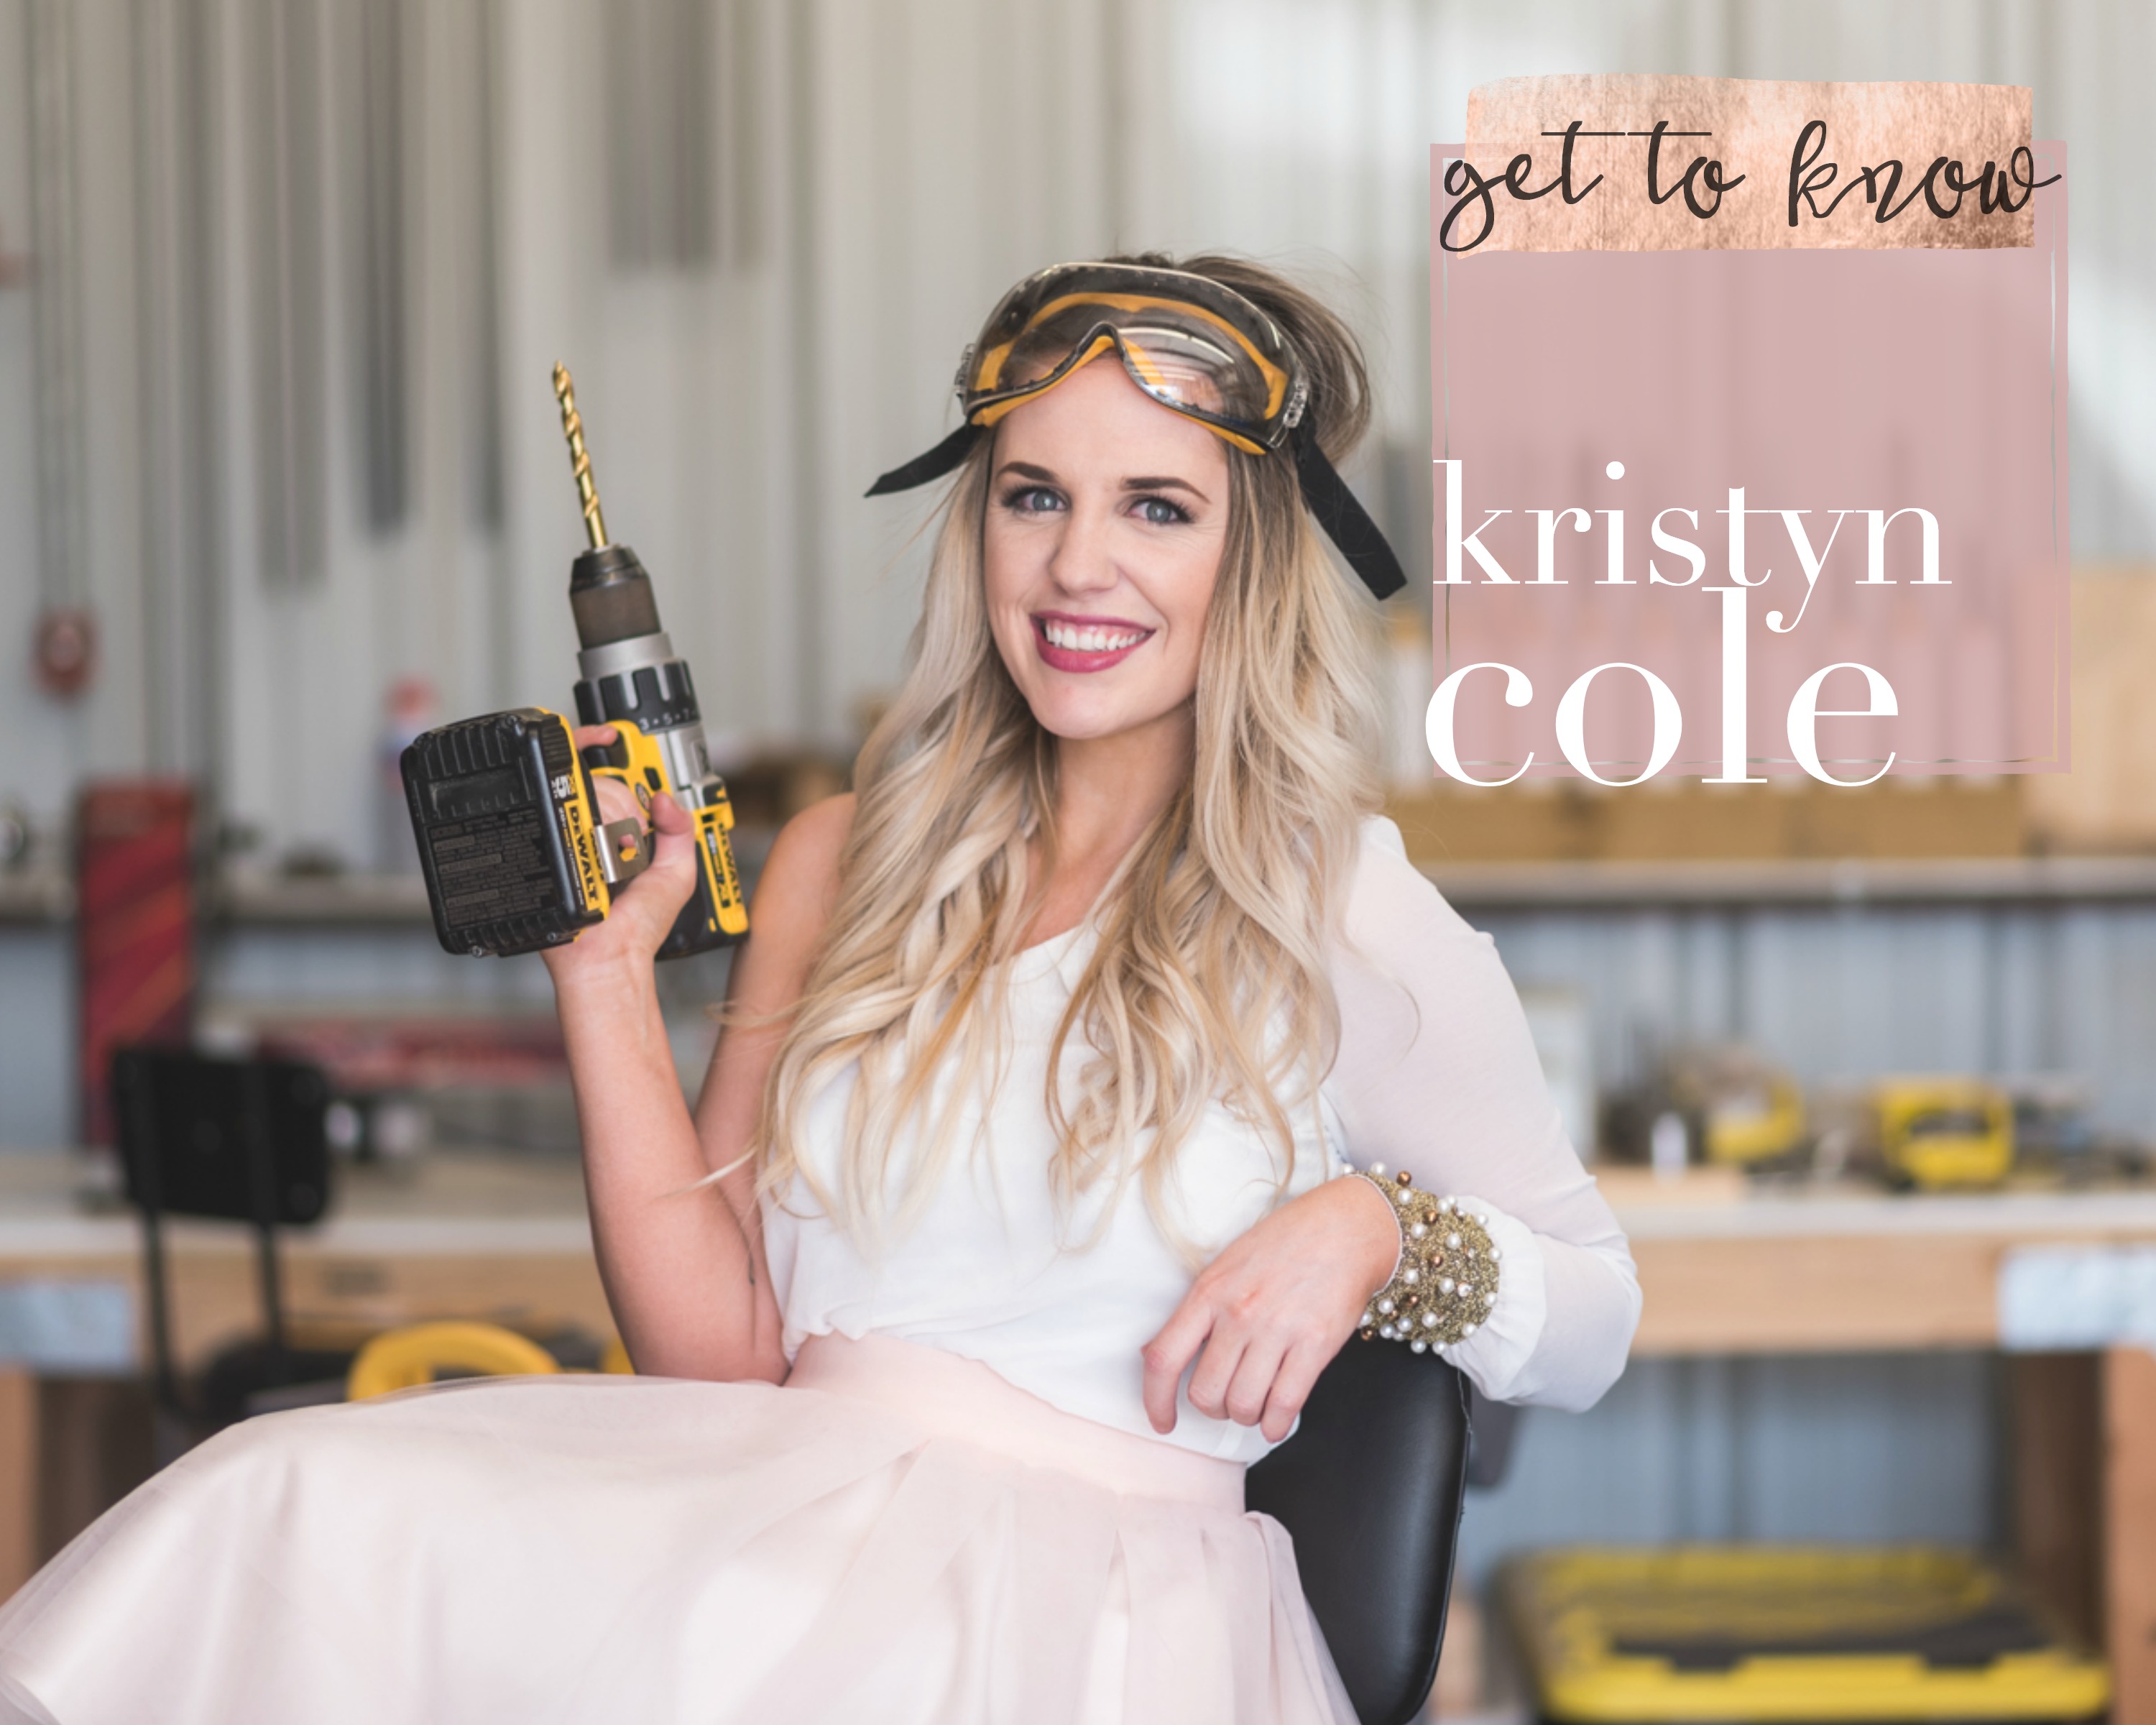 Meet Kristyn Cole | Kristyn Cole